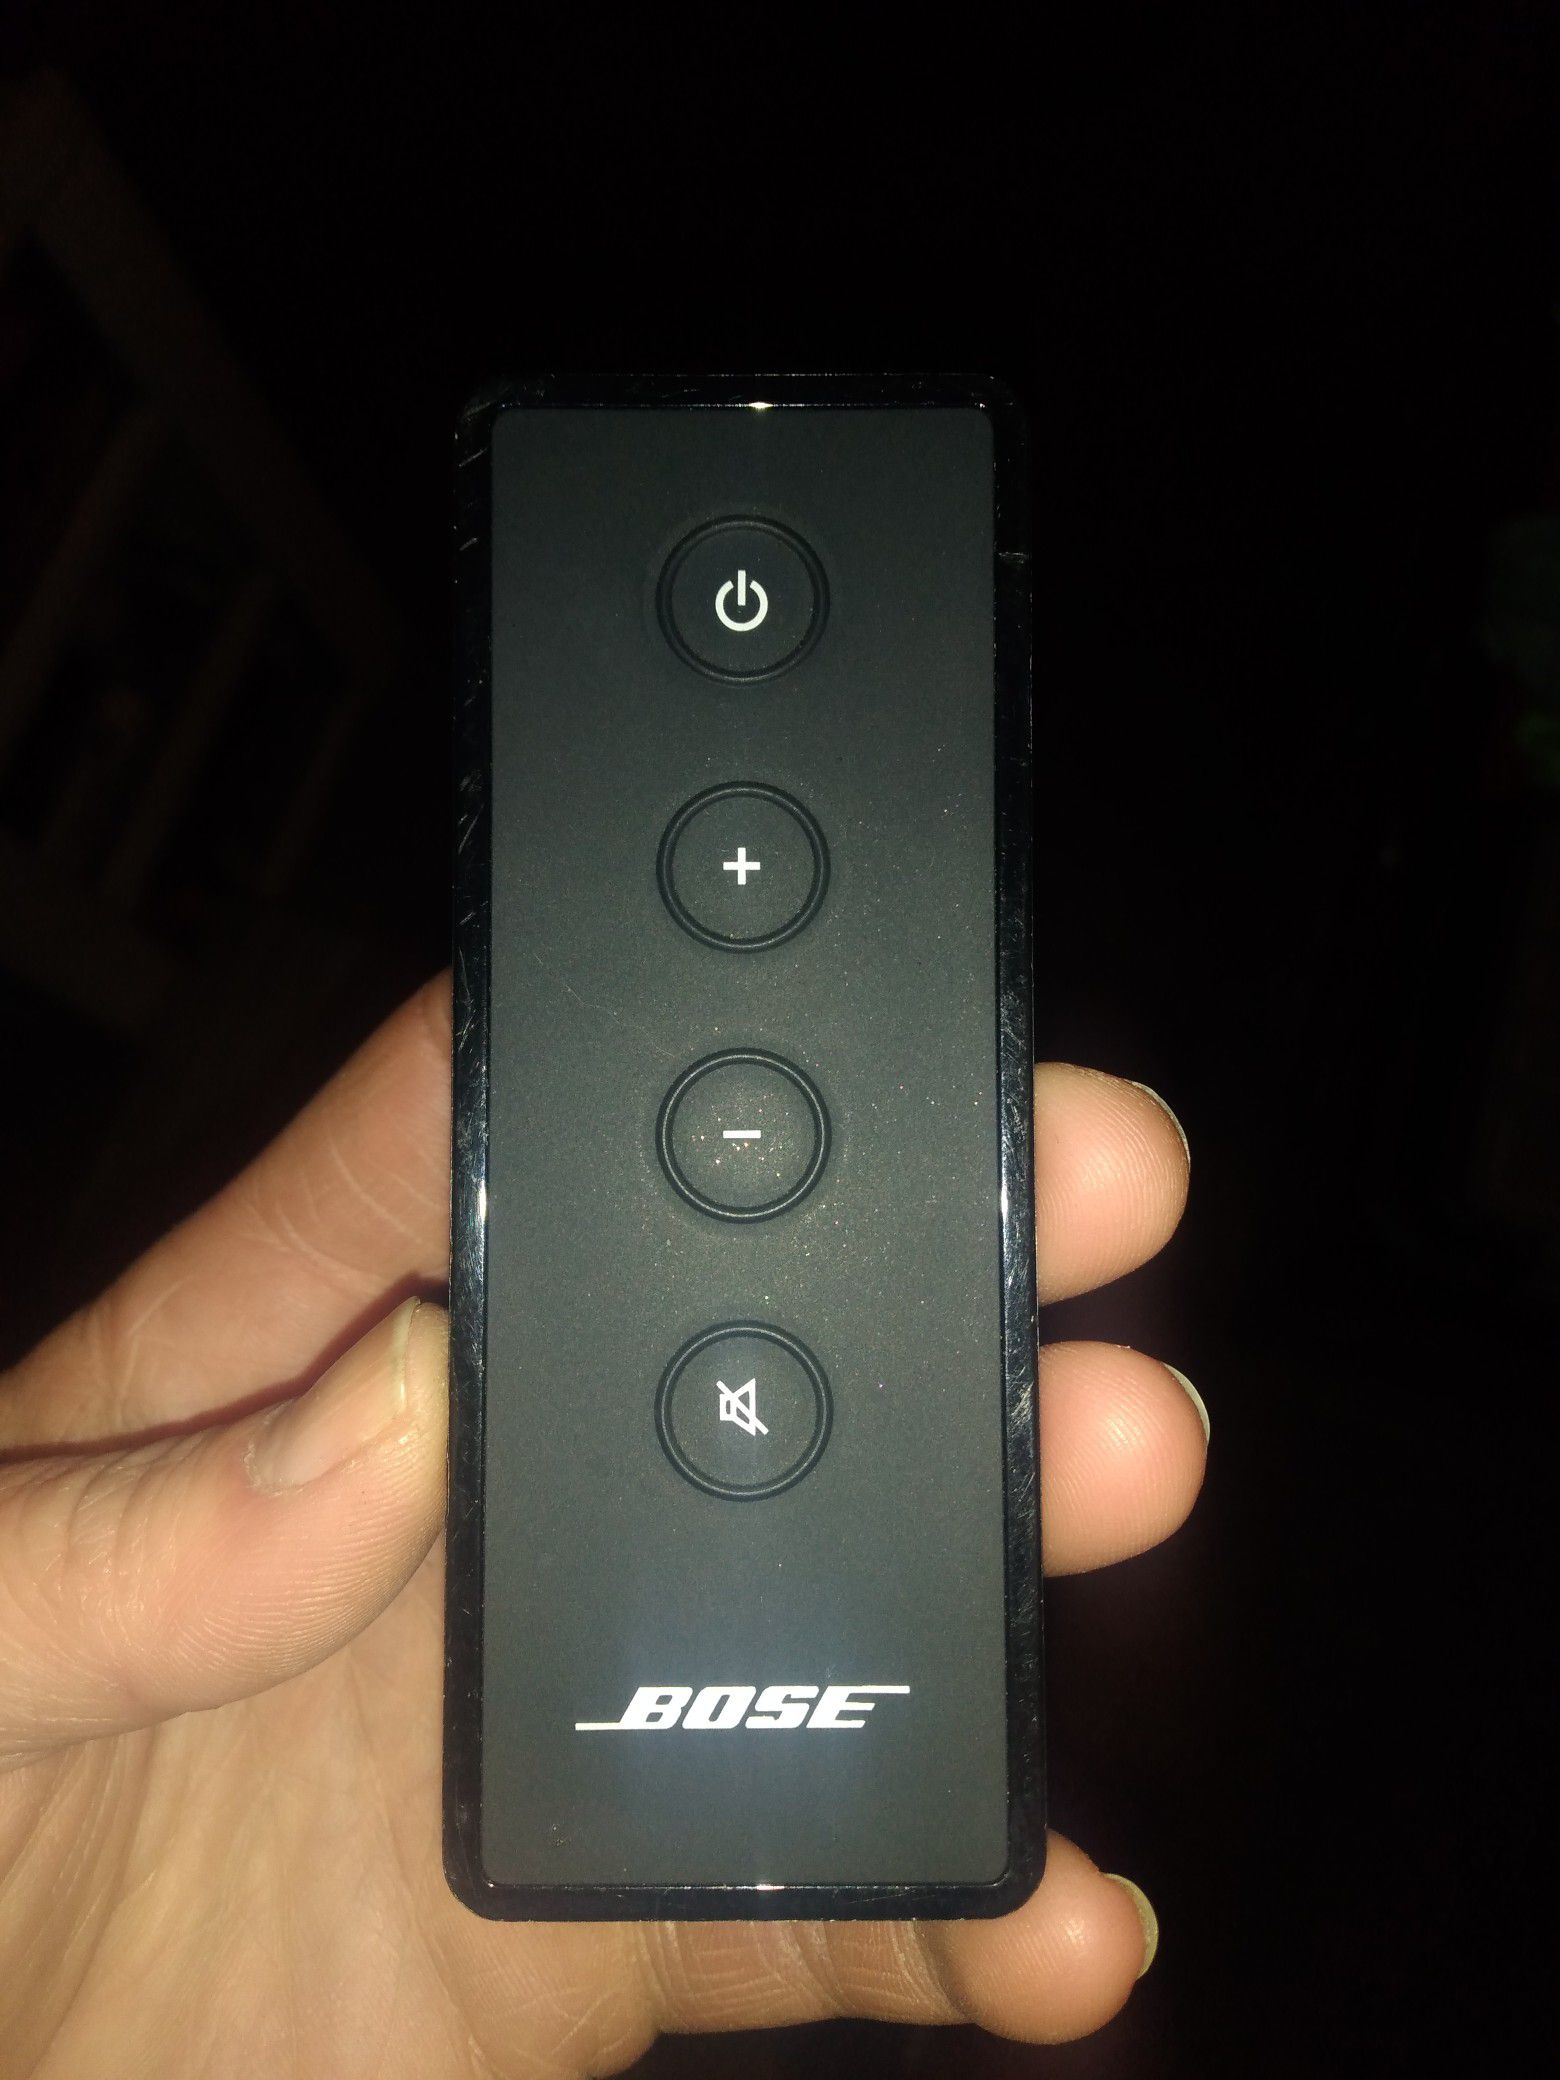 Bose remote